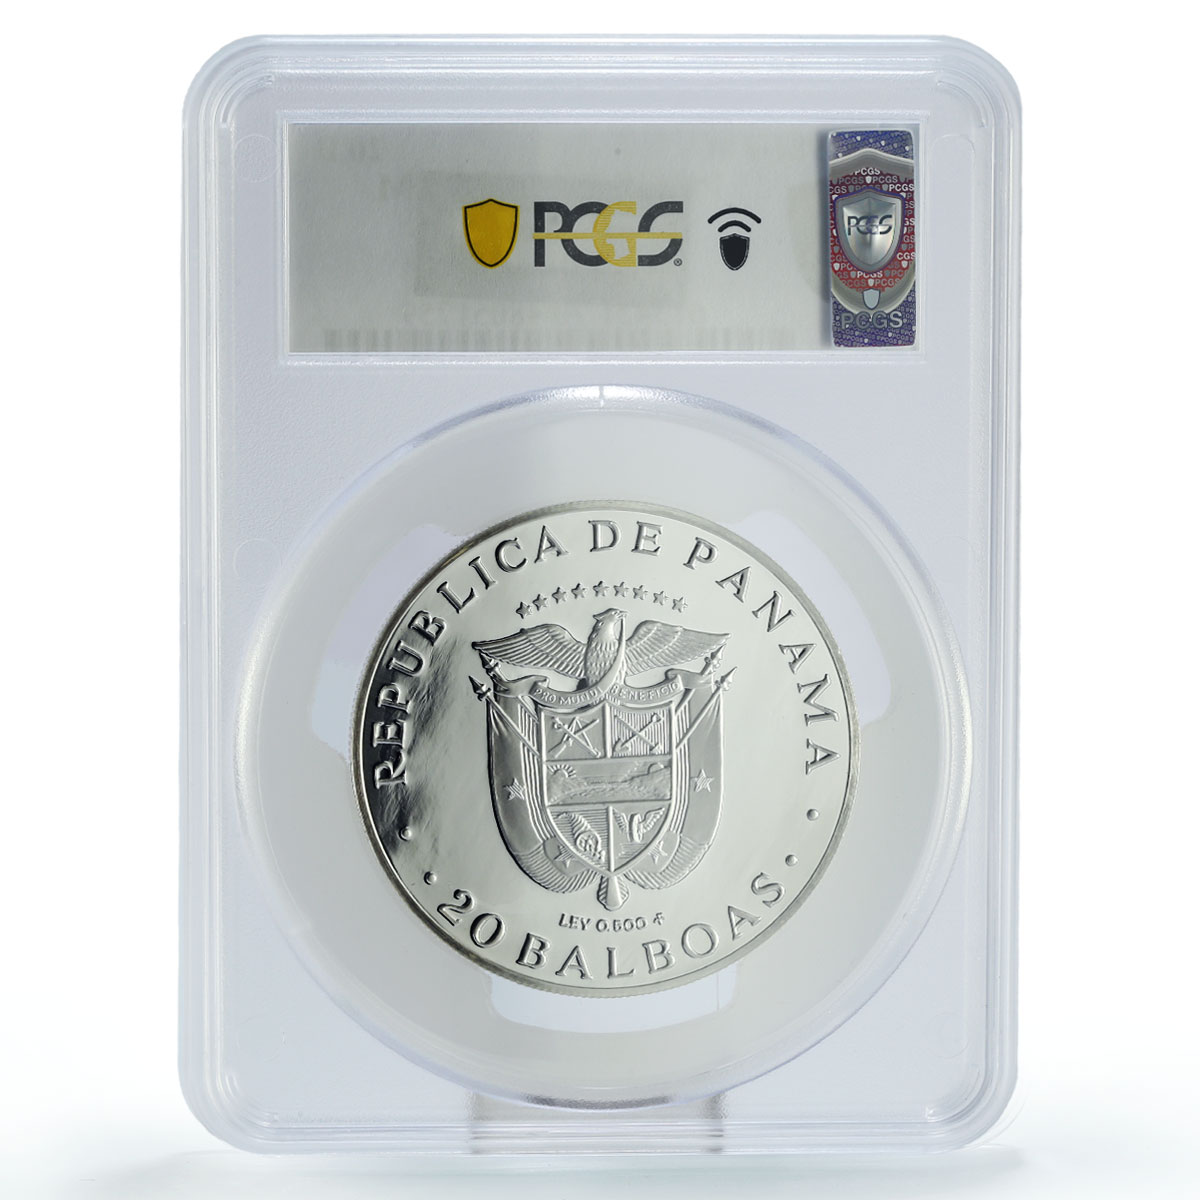 Panama 20 balboas Simon Bolivar Libertador Politics PR70 PCGS silver coin 1981